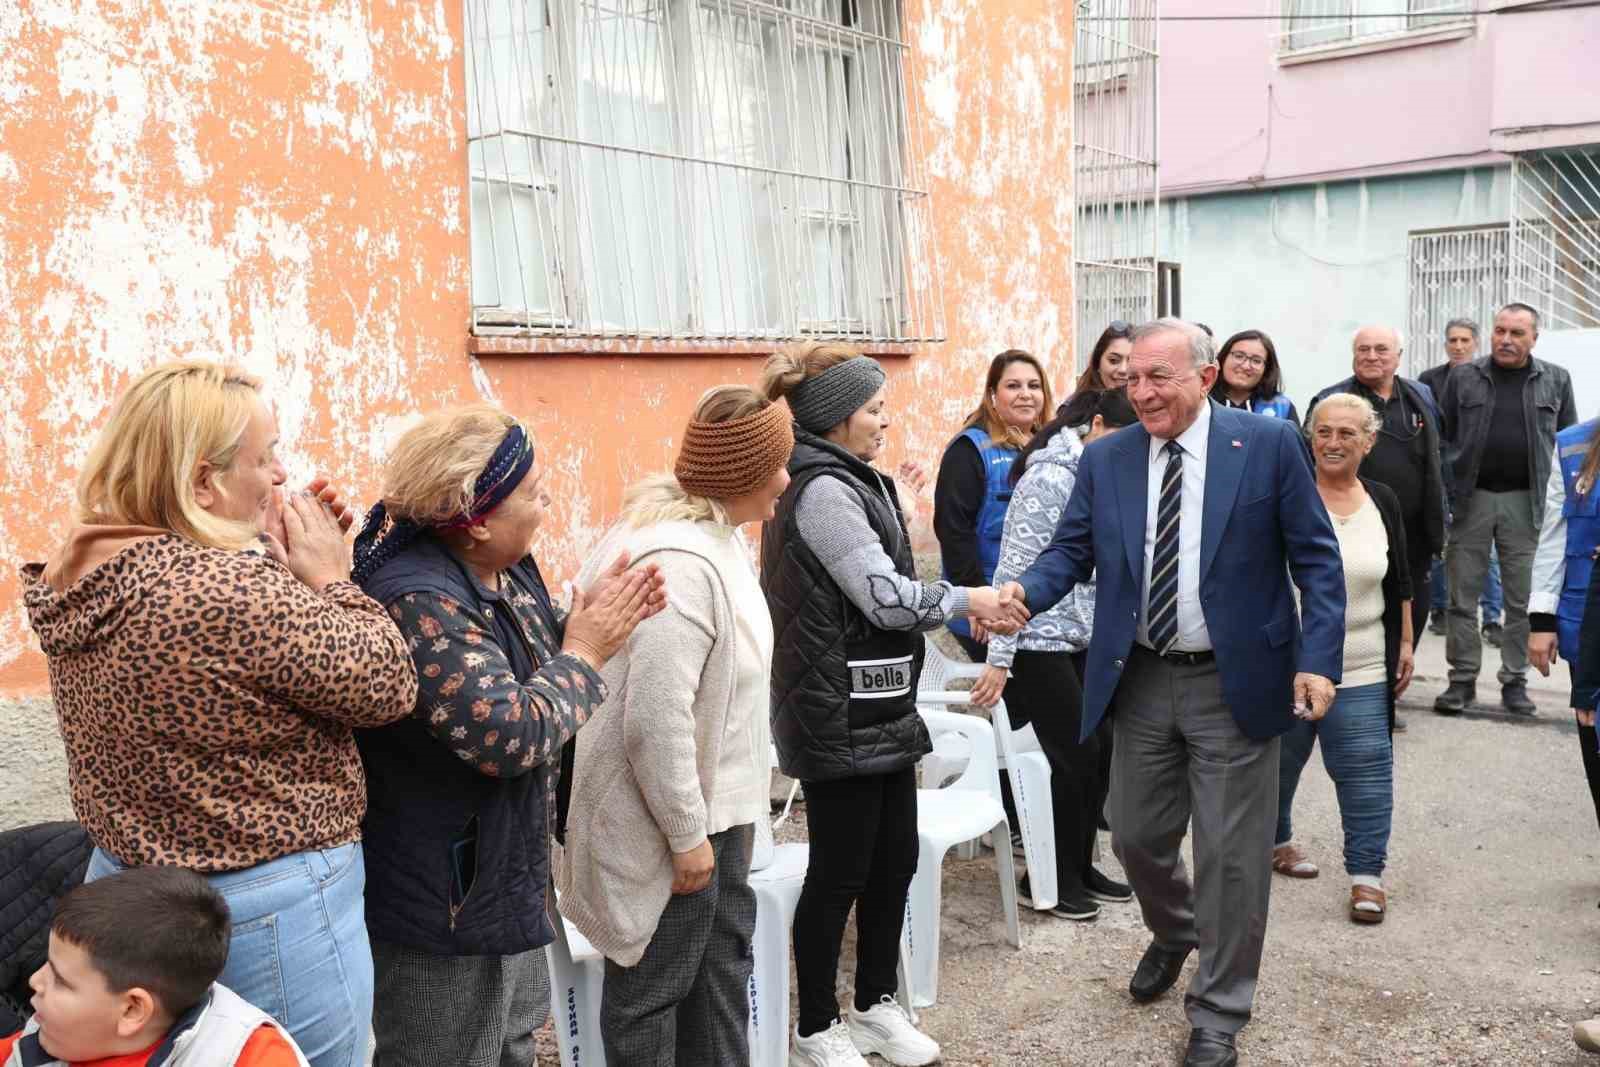 Seyhan Belediye Başkanı Akay: "Sorunları en derinden yaşayan kadınlardır"